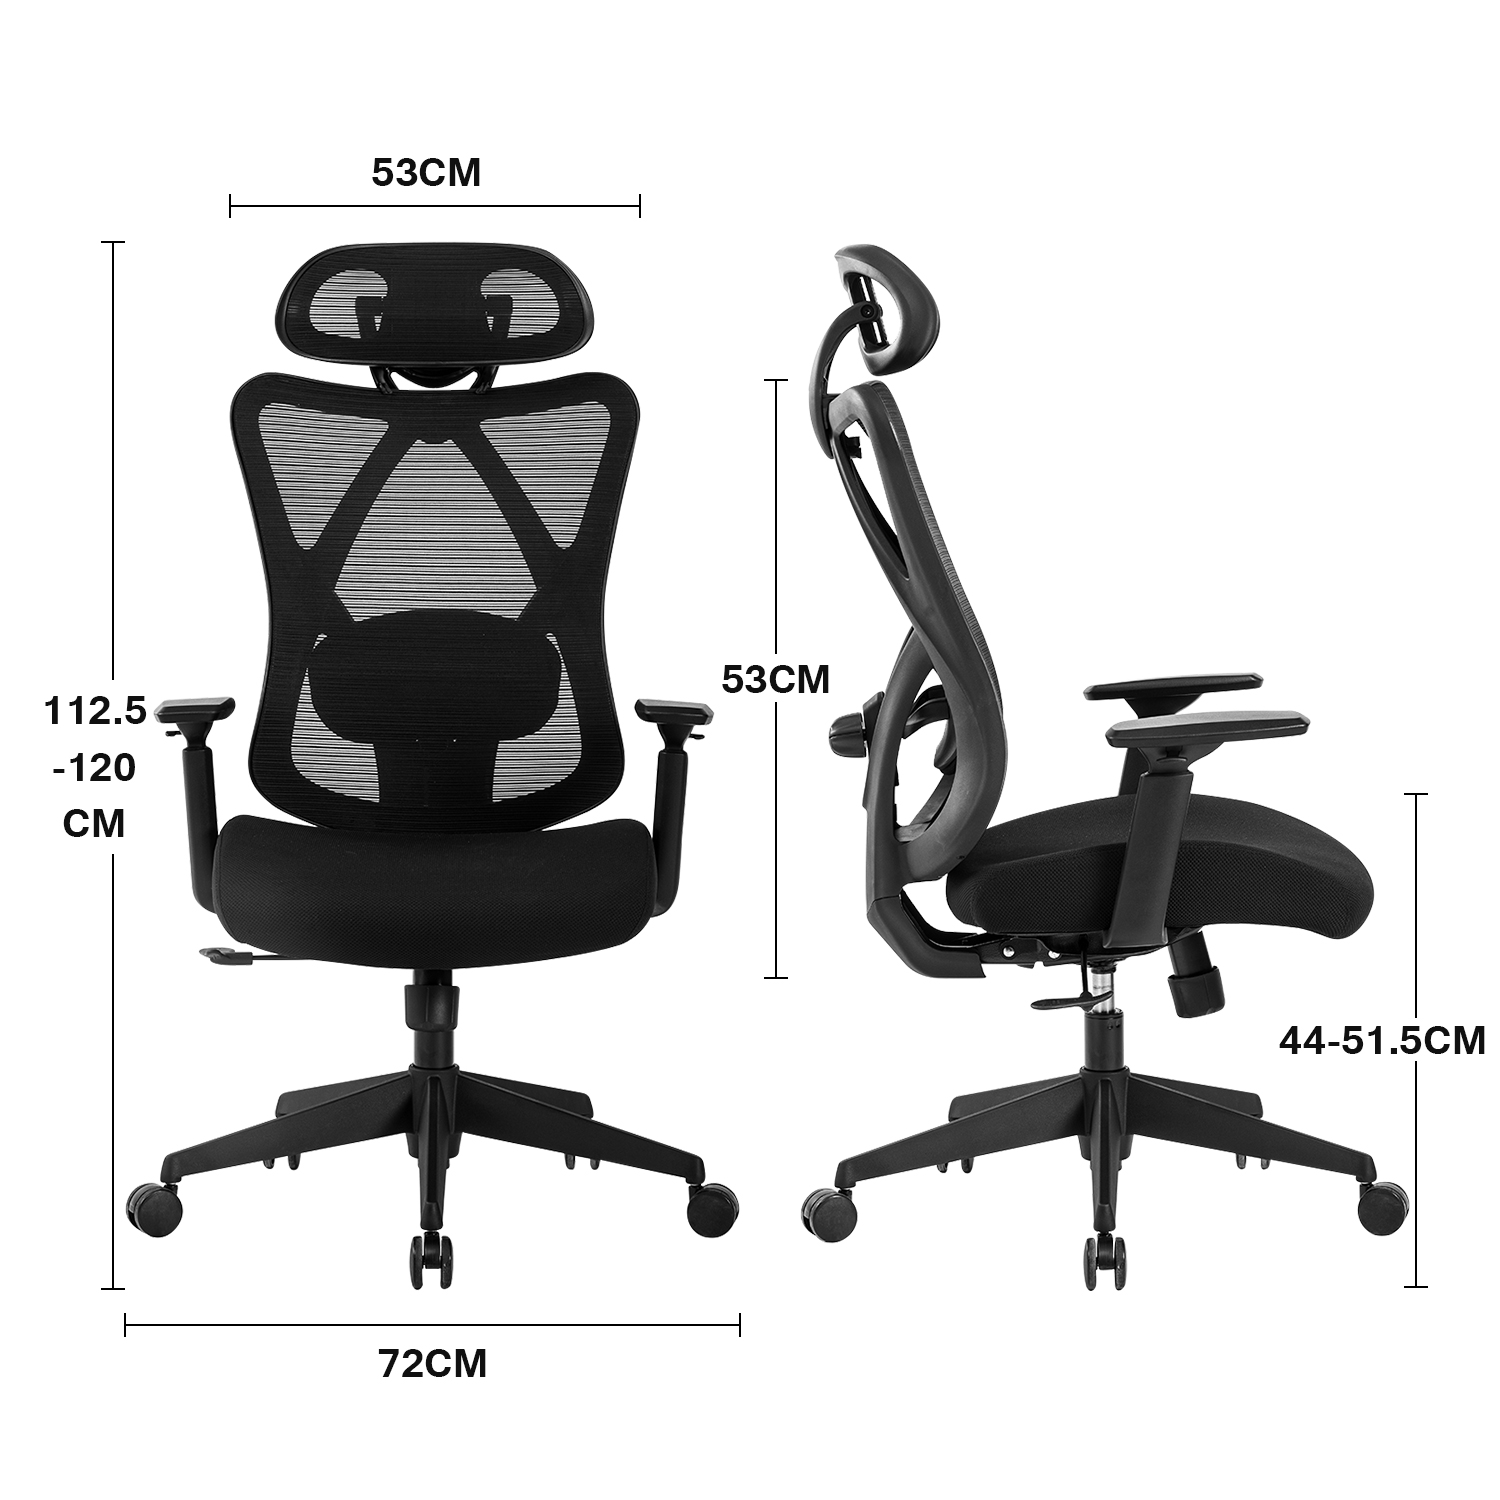 Fauteuil de bureau chaise de bureau assise haute réglable dim. 64l x 59l x  104-124h cm pivotant 360° maille respirante noir - Conforama